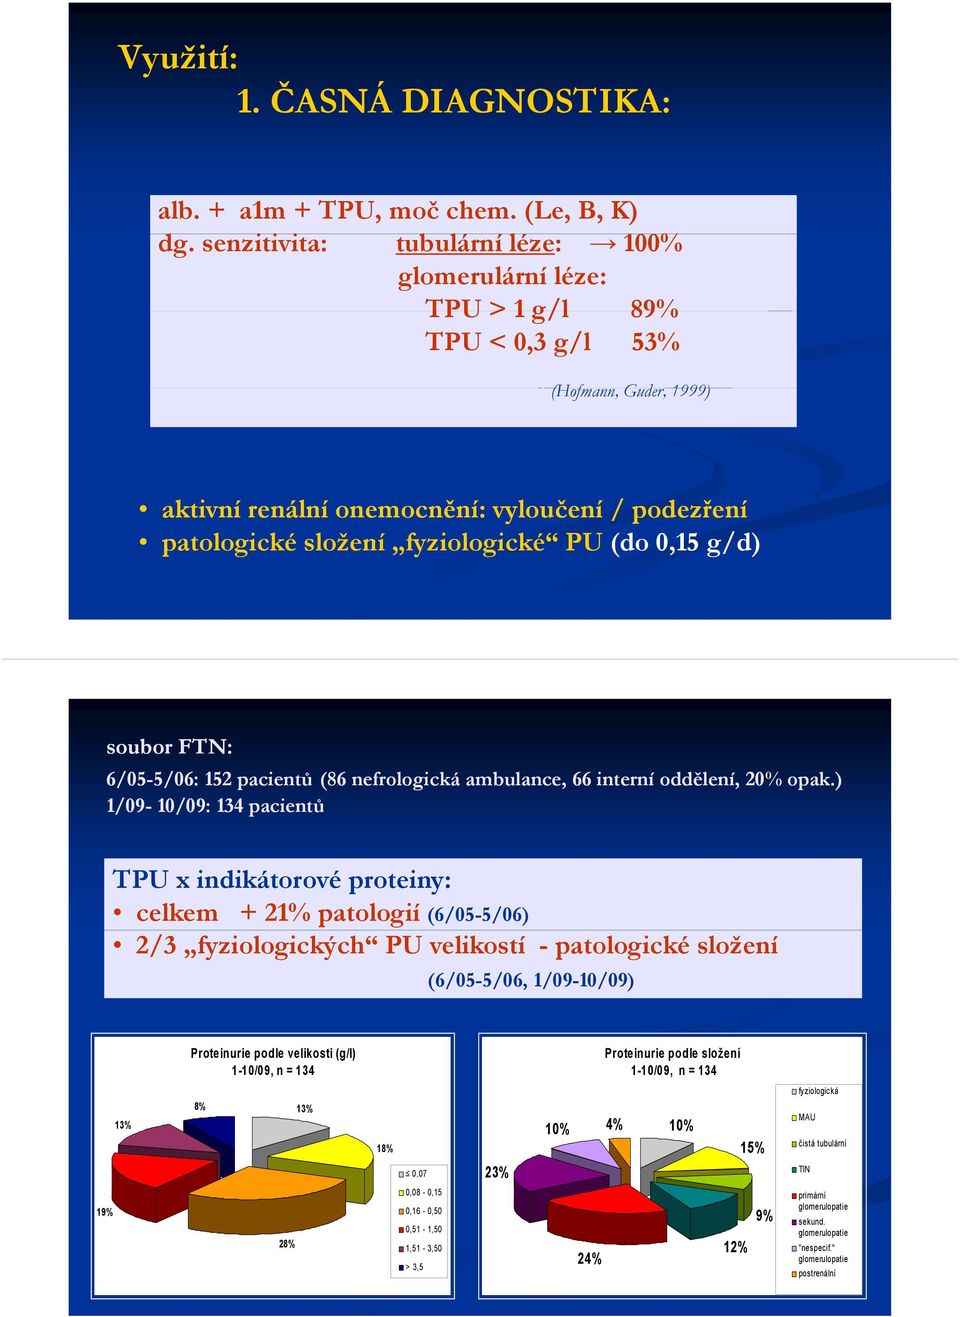 fyziologické PU (do 0,15 g/d) soubor FTN: 6/05-5/06: 5/06: 152 pacientů (86 nefrologická ambulance, 66 interní oddělení, 20% opak.